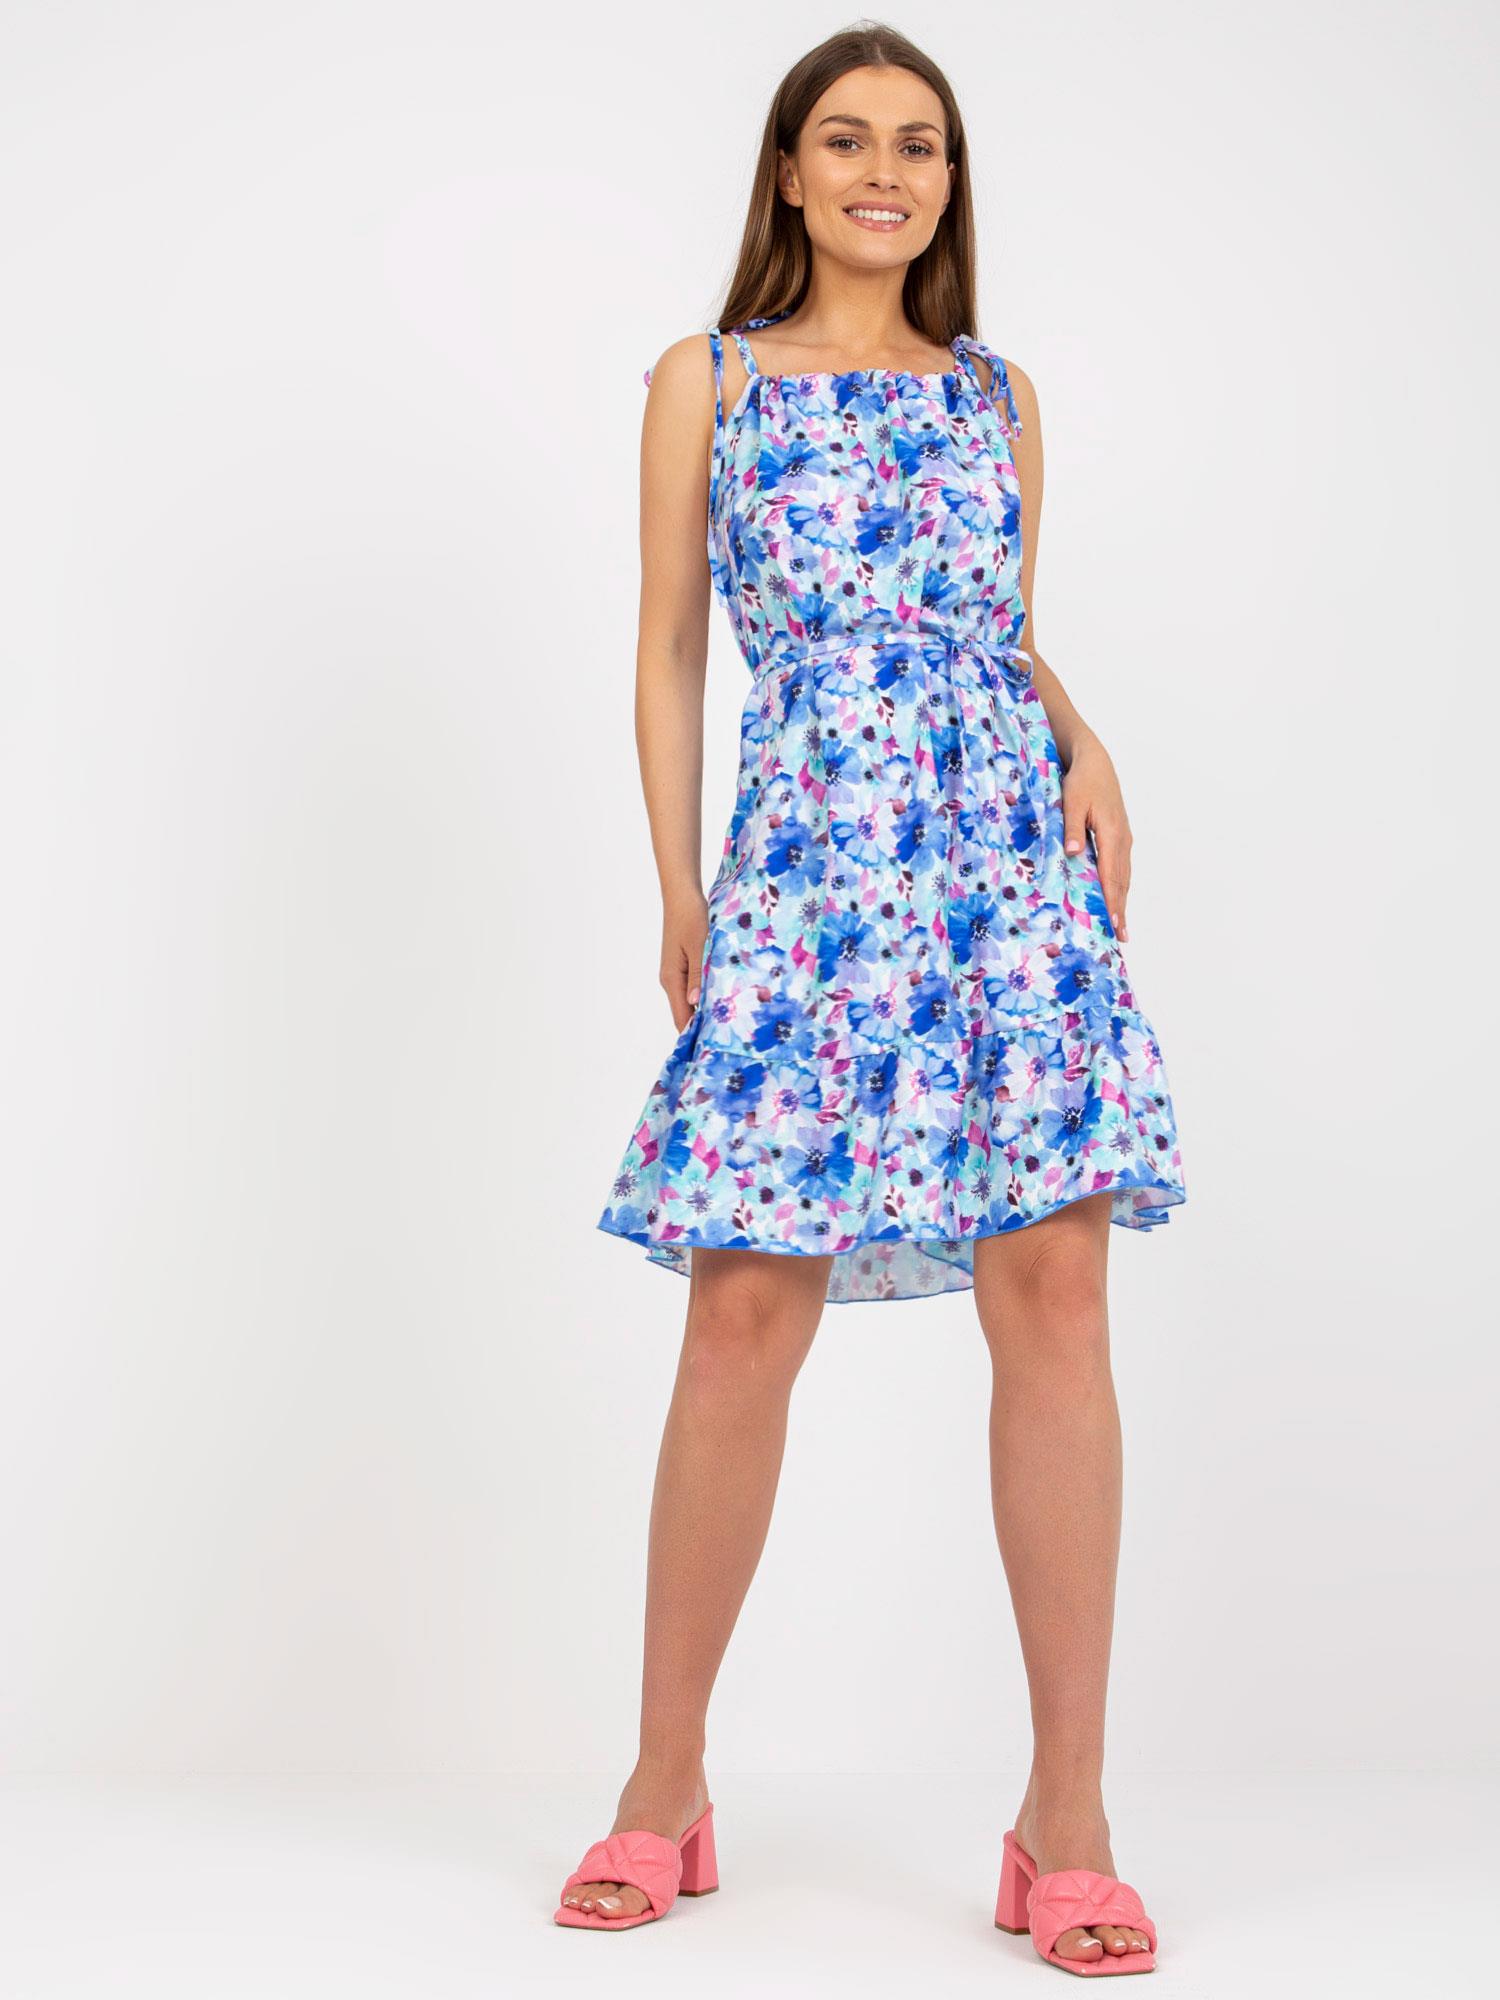 Bílo-modré květované šaty -WN-SK-0806-3.22-whie-blue Velikost: L/XL